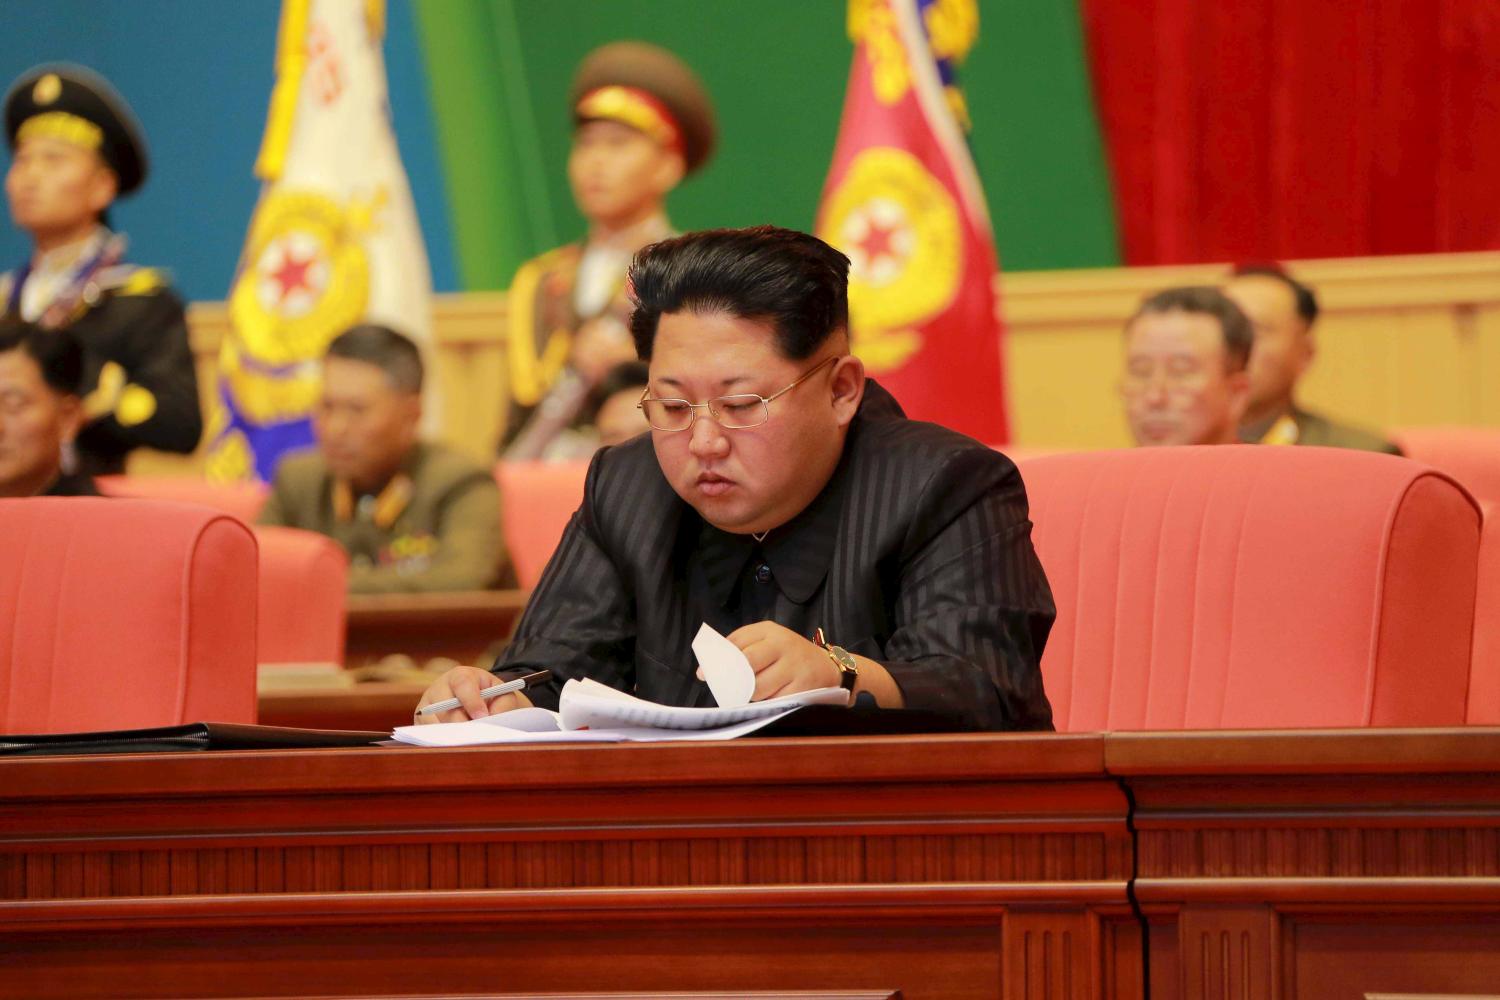 Kim Jong-un gives a speech.